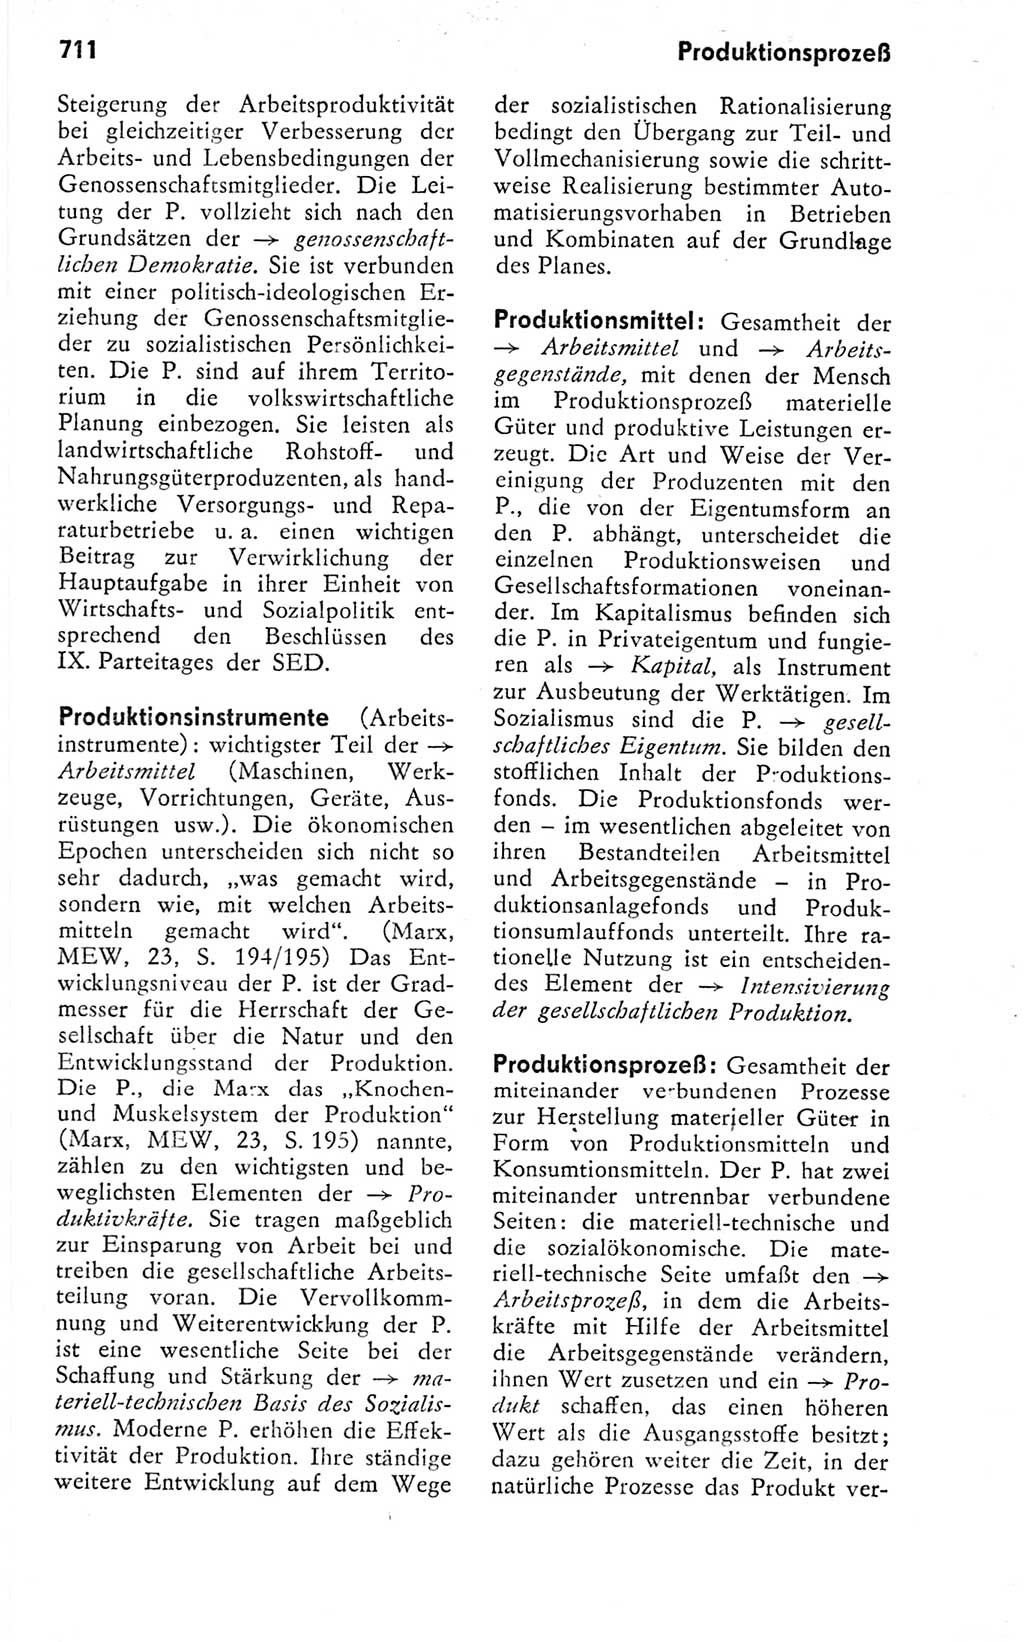 Kleines politisches Wörterbuch [Deutsche Demokratische Republik (DDR)] 1978, Seite 711 (Kl. pol. Wb. DDR 1978, S. 711)